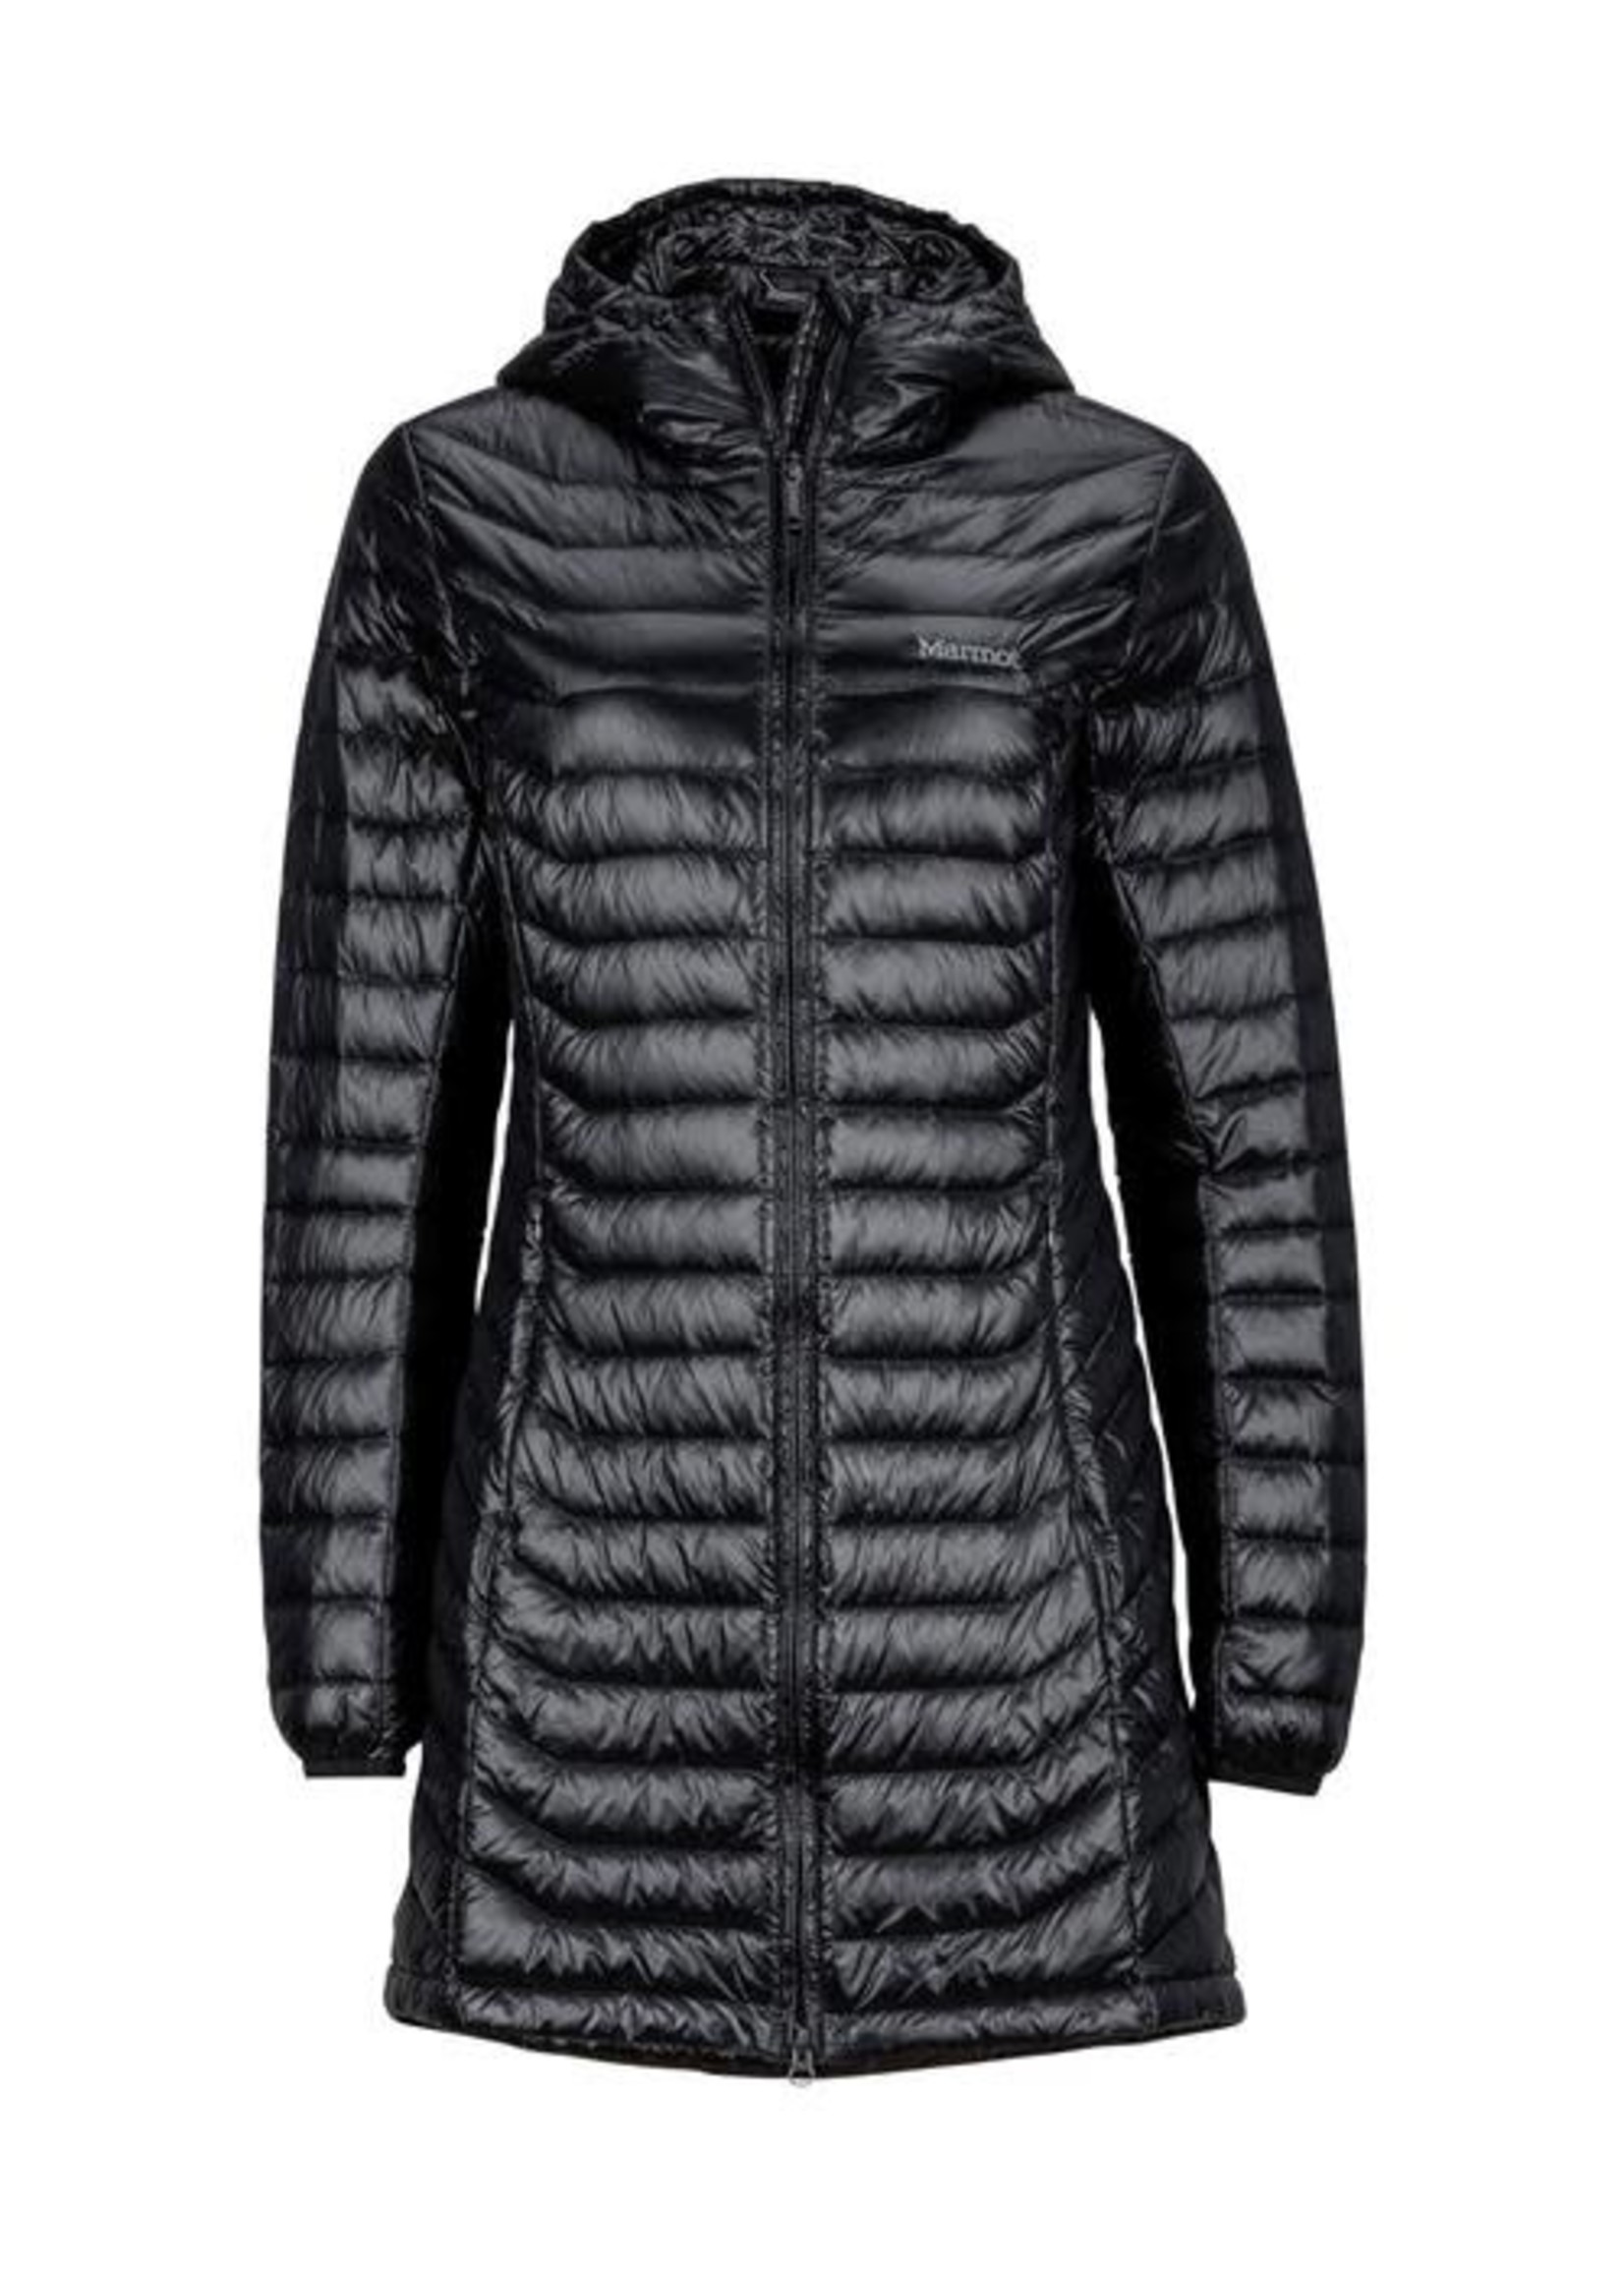 Marmot Manteau Sonya Jacket pour femmes Noir Large